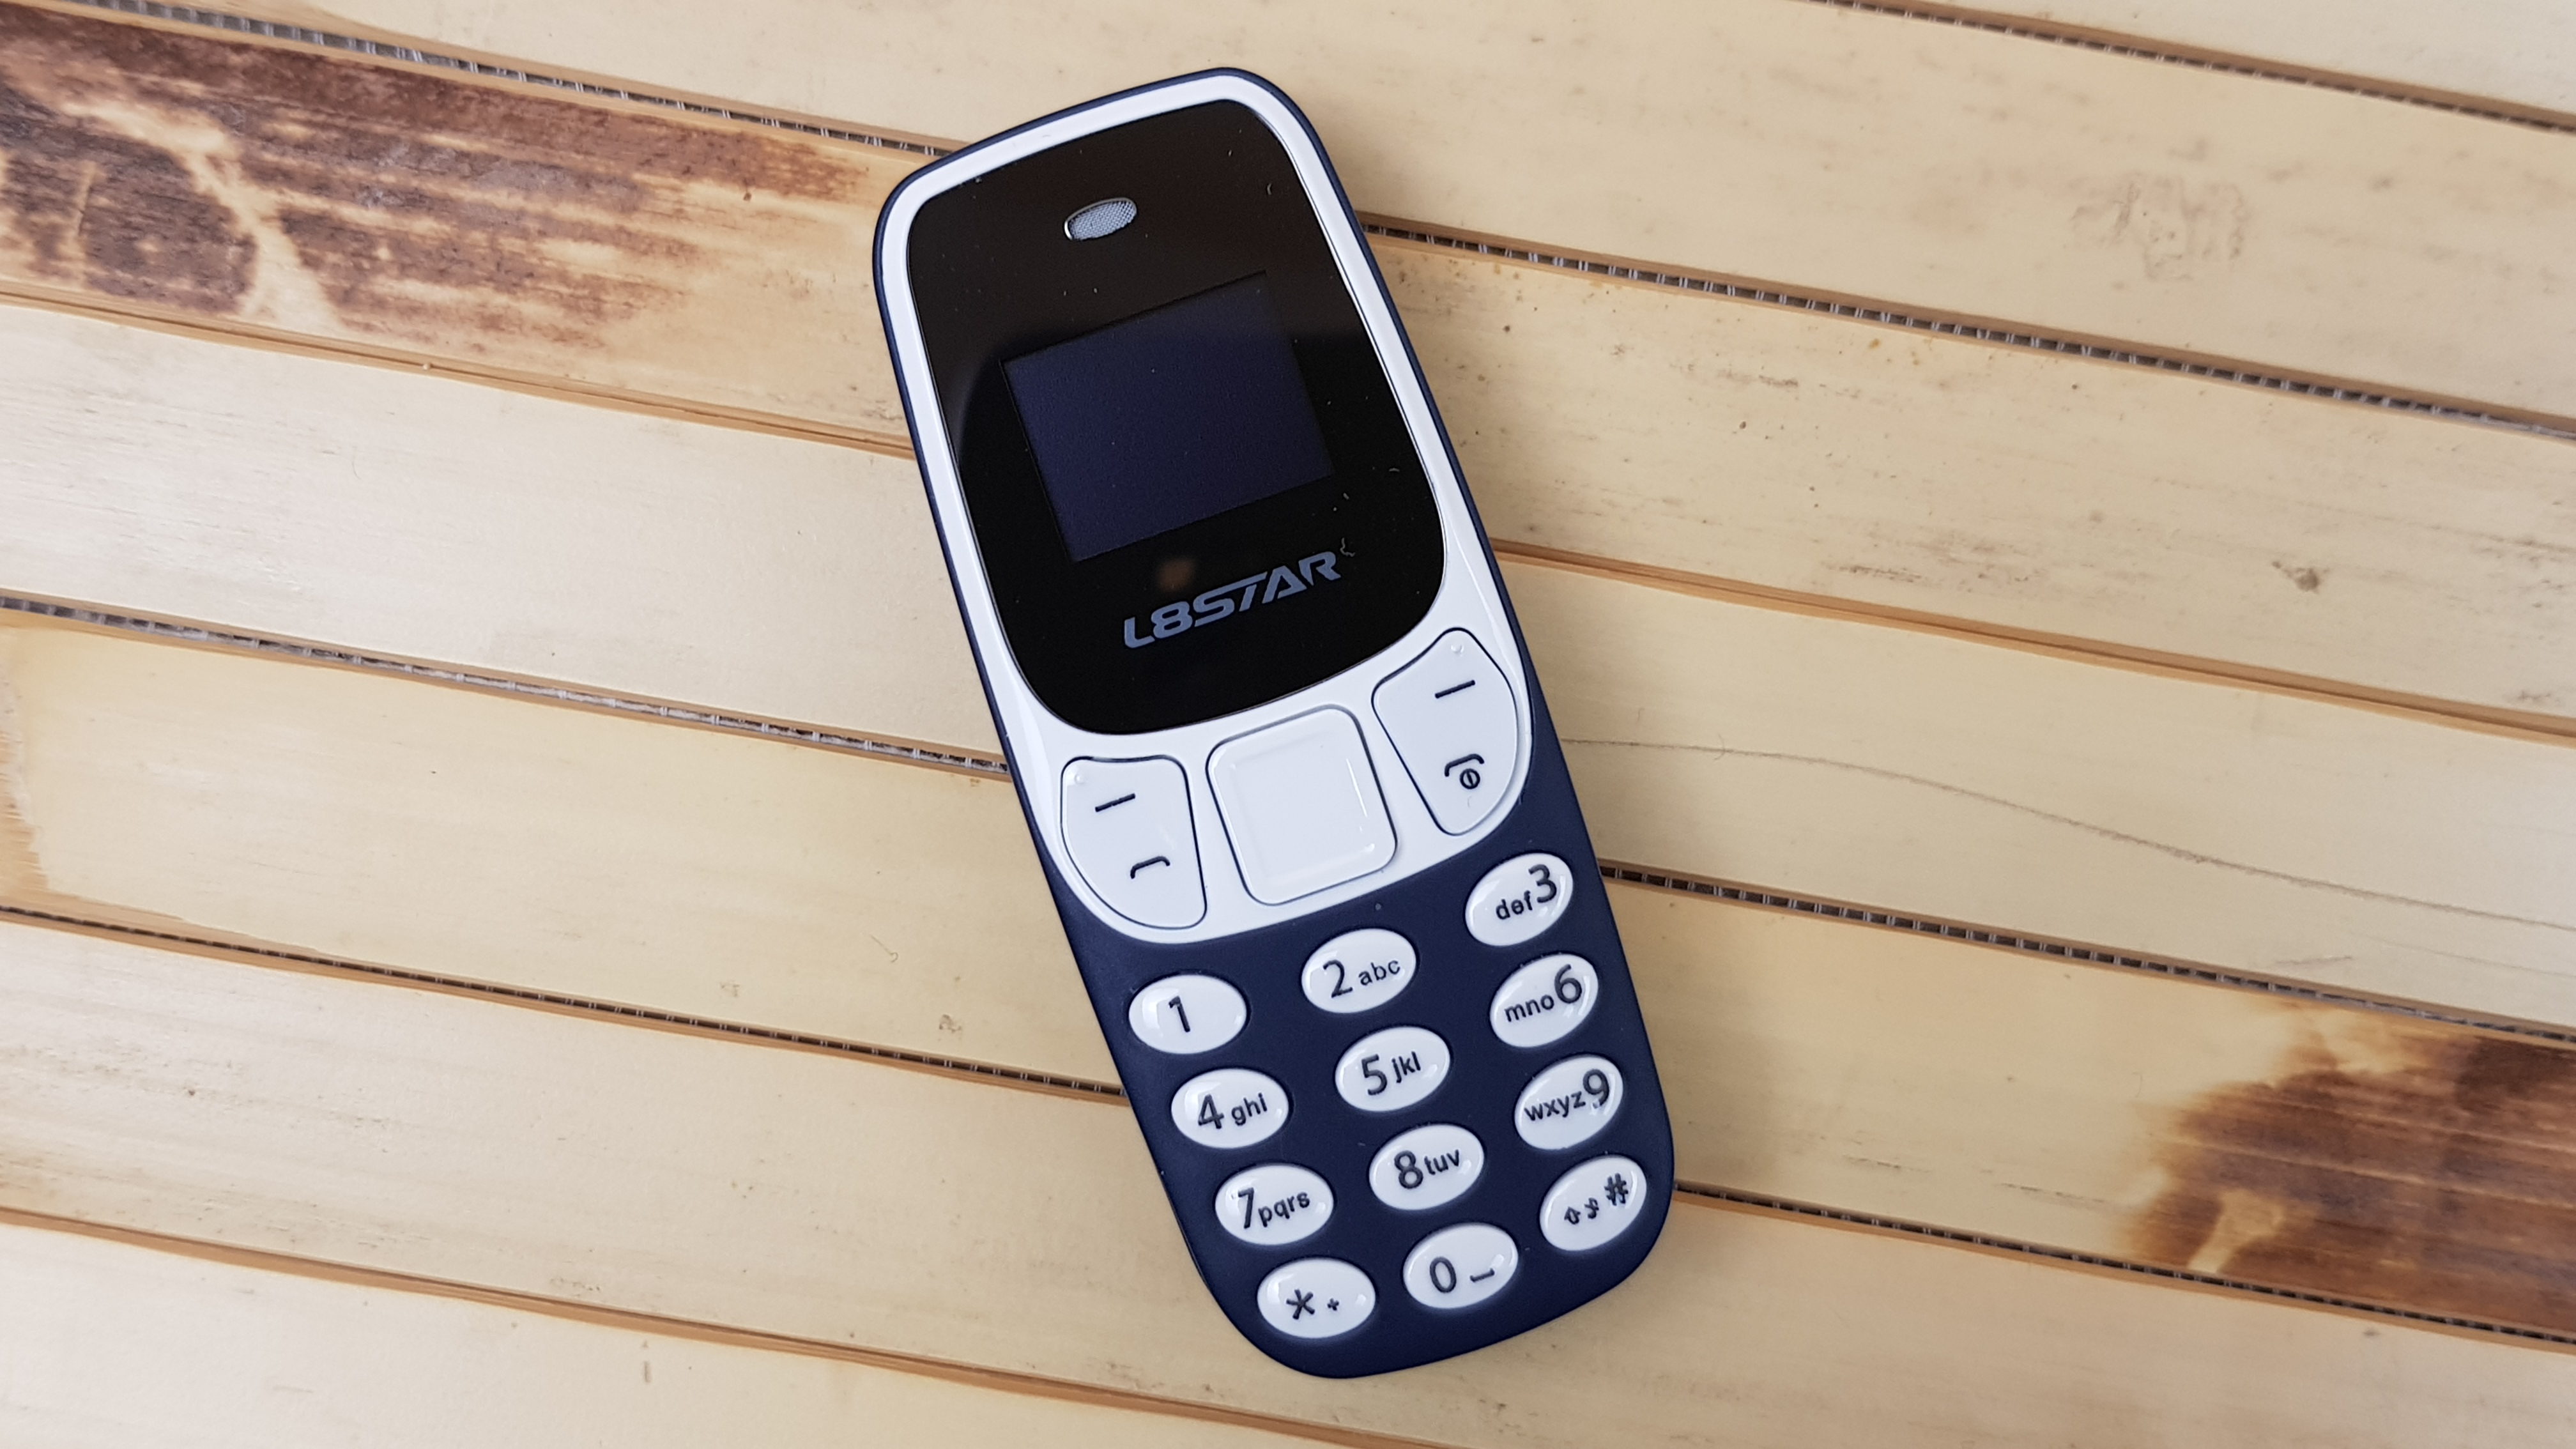 L8star bm10. Миниатюрный мобильный телефон l8star bm10. Мини Nokia. Nokia 3310 с двумя SIM. Телефон до 10 версии